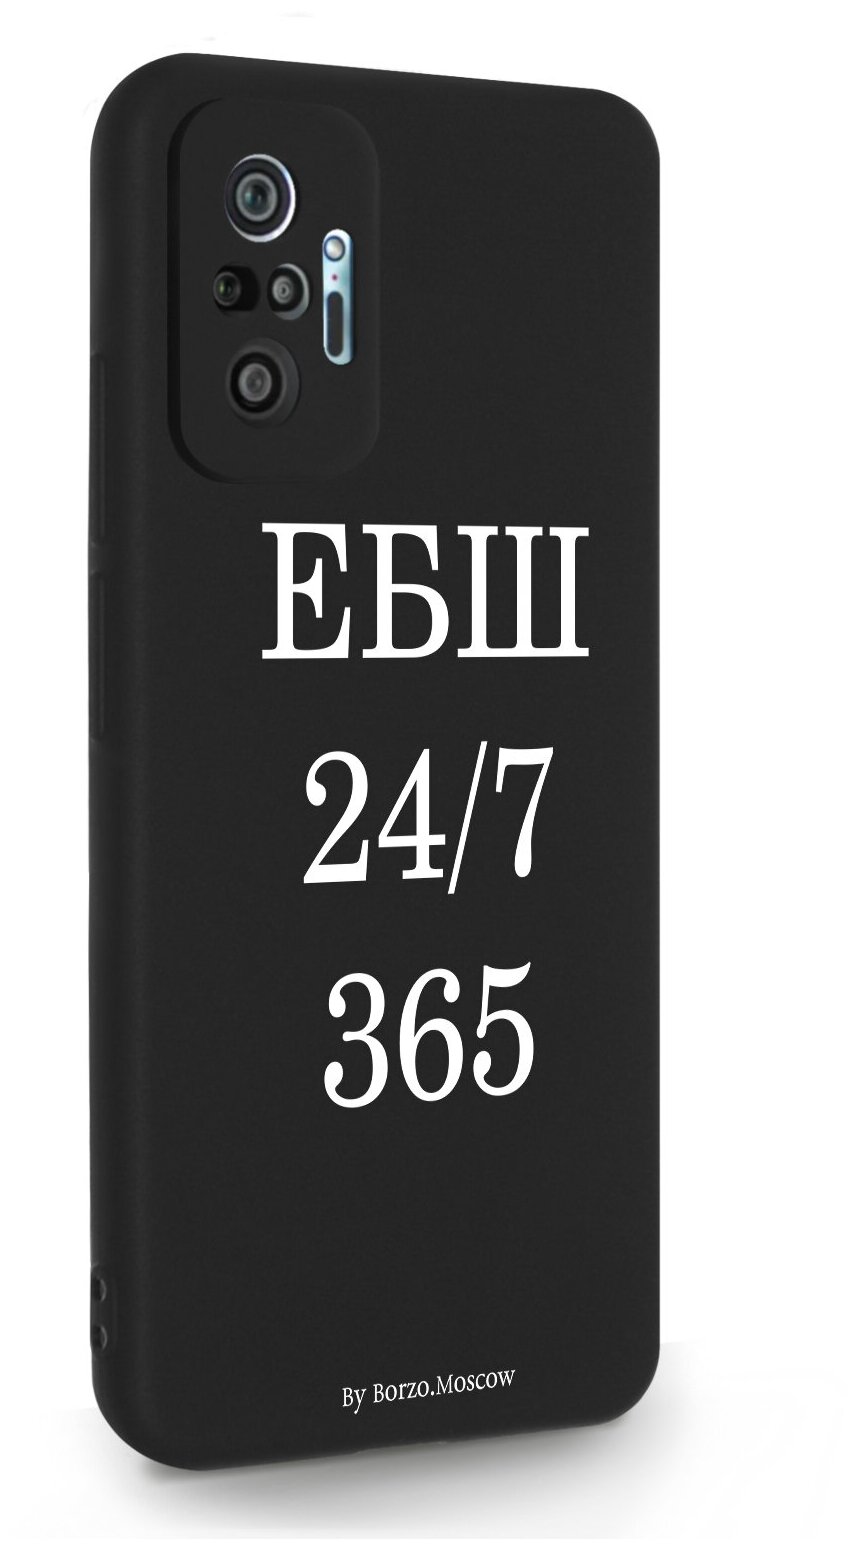 Черный силиконовый чехол Borzo.Moscow для Xiaomi Redmi Note 10 Pro ЕБШ 24/7/365 для Сяоми Редми Ноут 10 Про